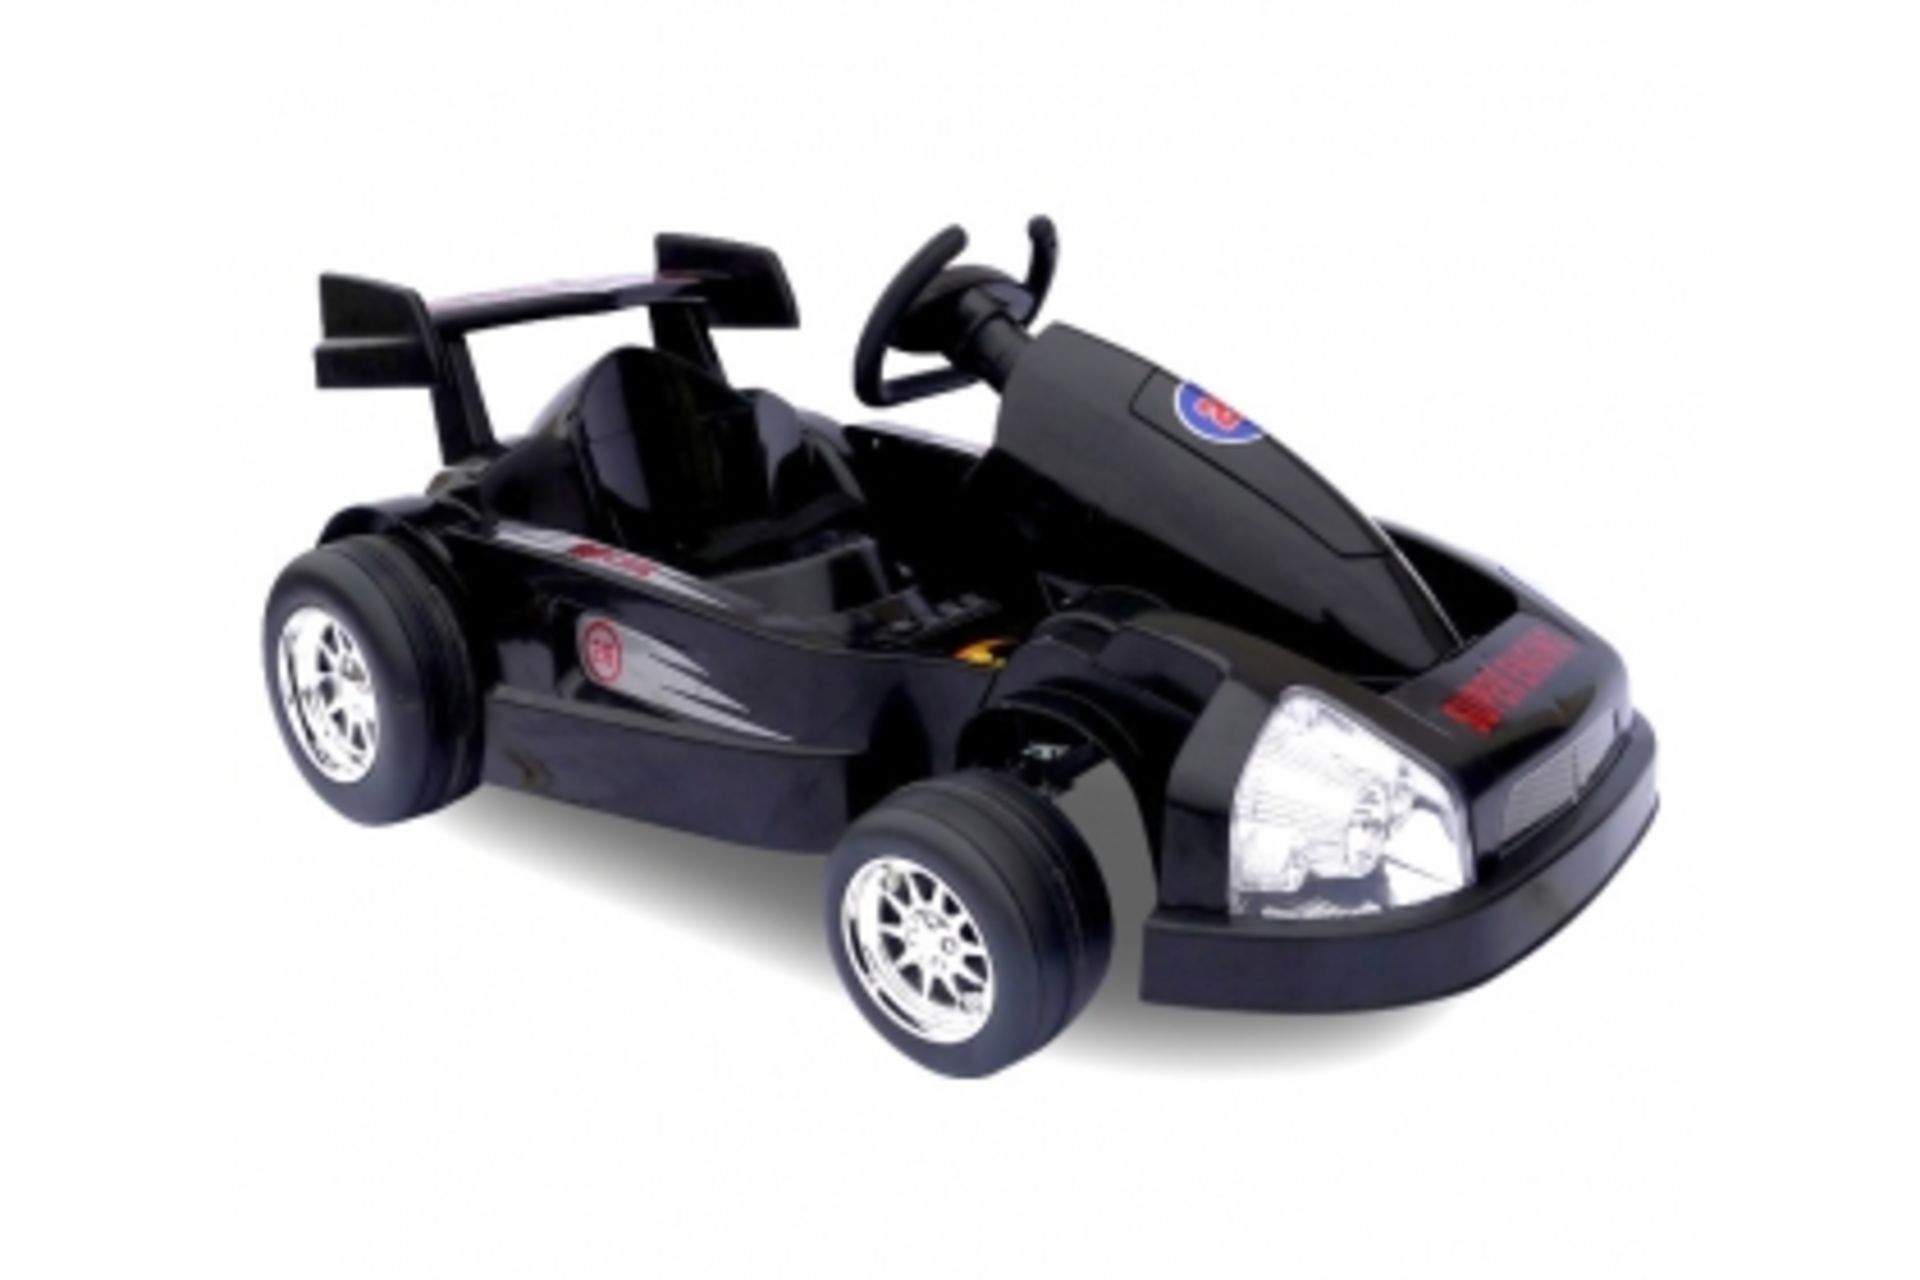 V Brand New Childs Ride On Go Kart 6V RRP £139.99